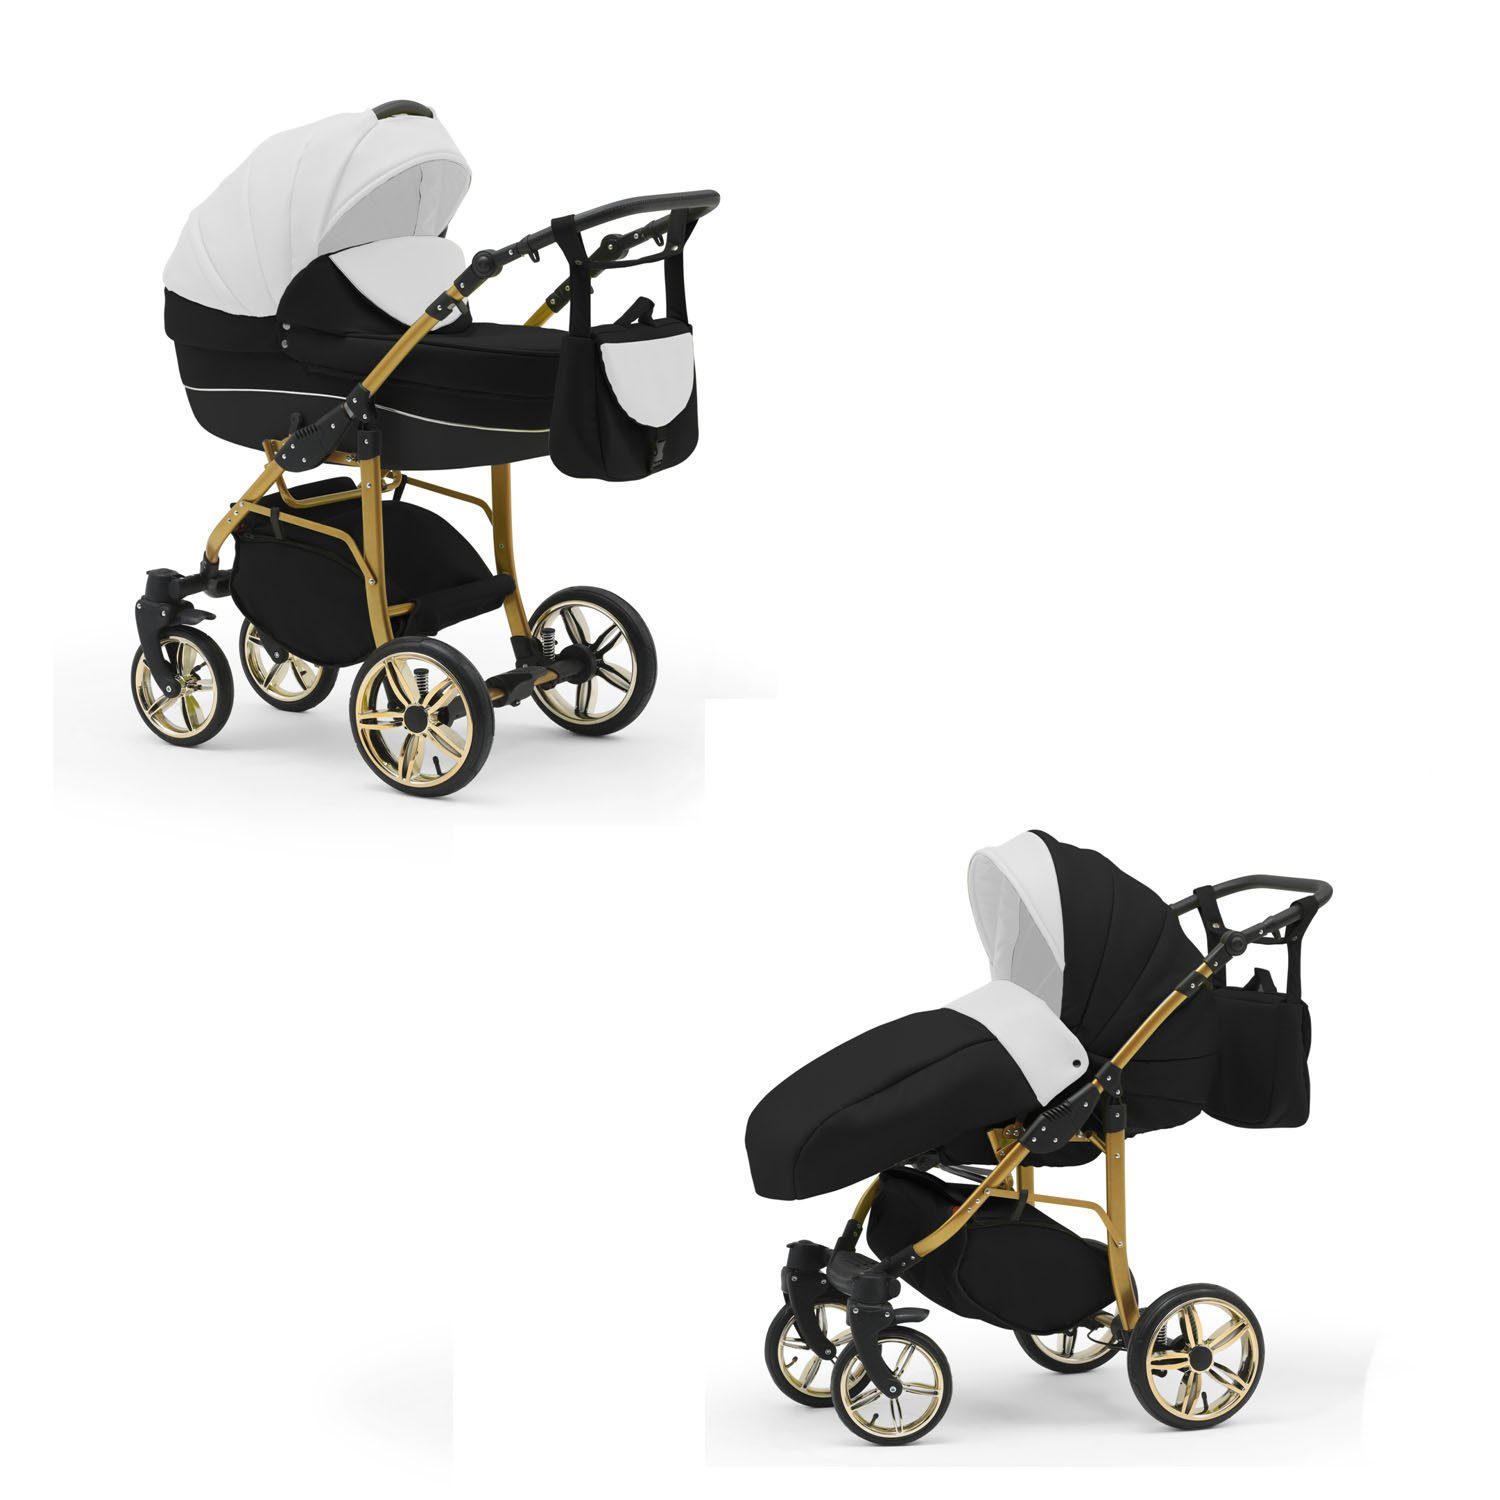 1 2 in babies-on-wheels - Kombi-Kinderwagen - Farben 13 in Gold 46 Teile Kinderwagen-Set Weiß-Schwarz-Schwarz Cosmo